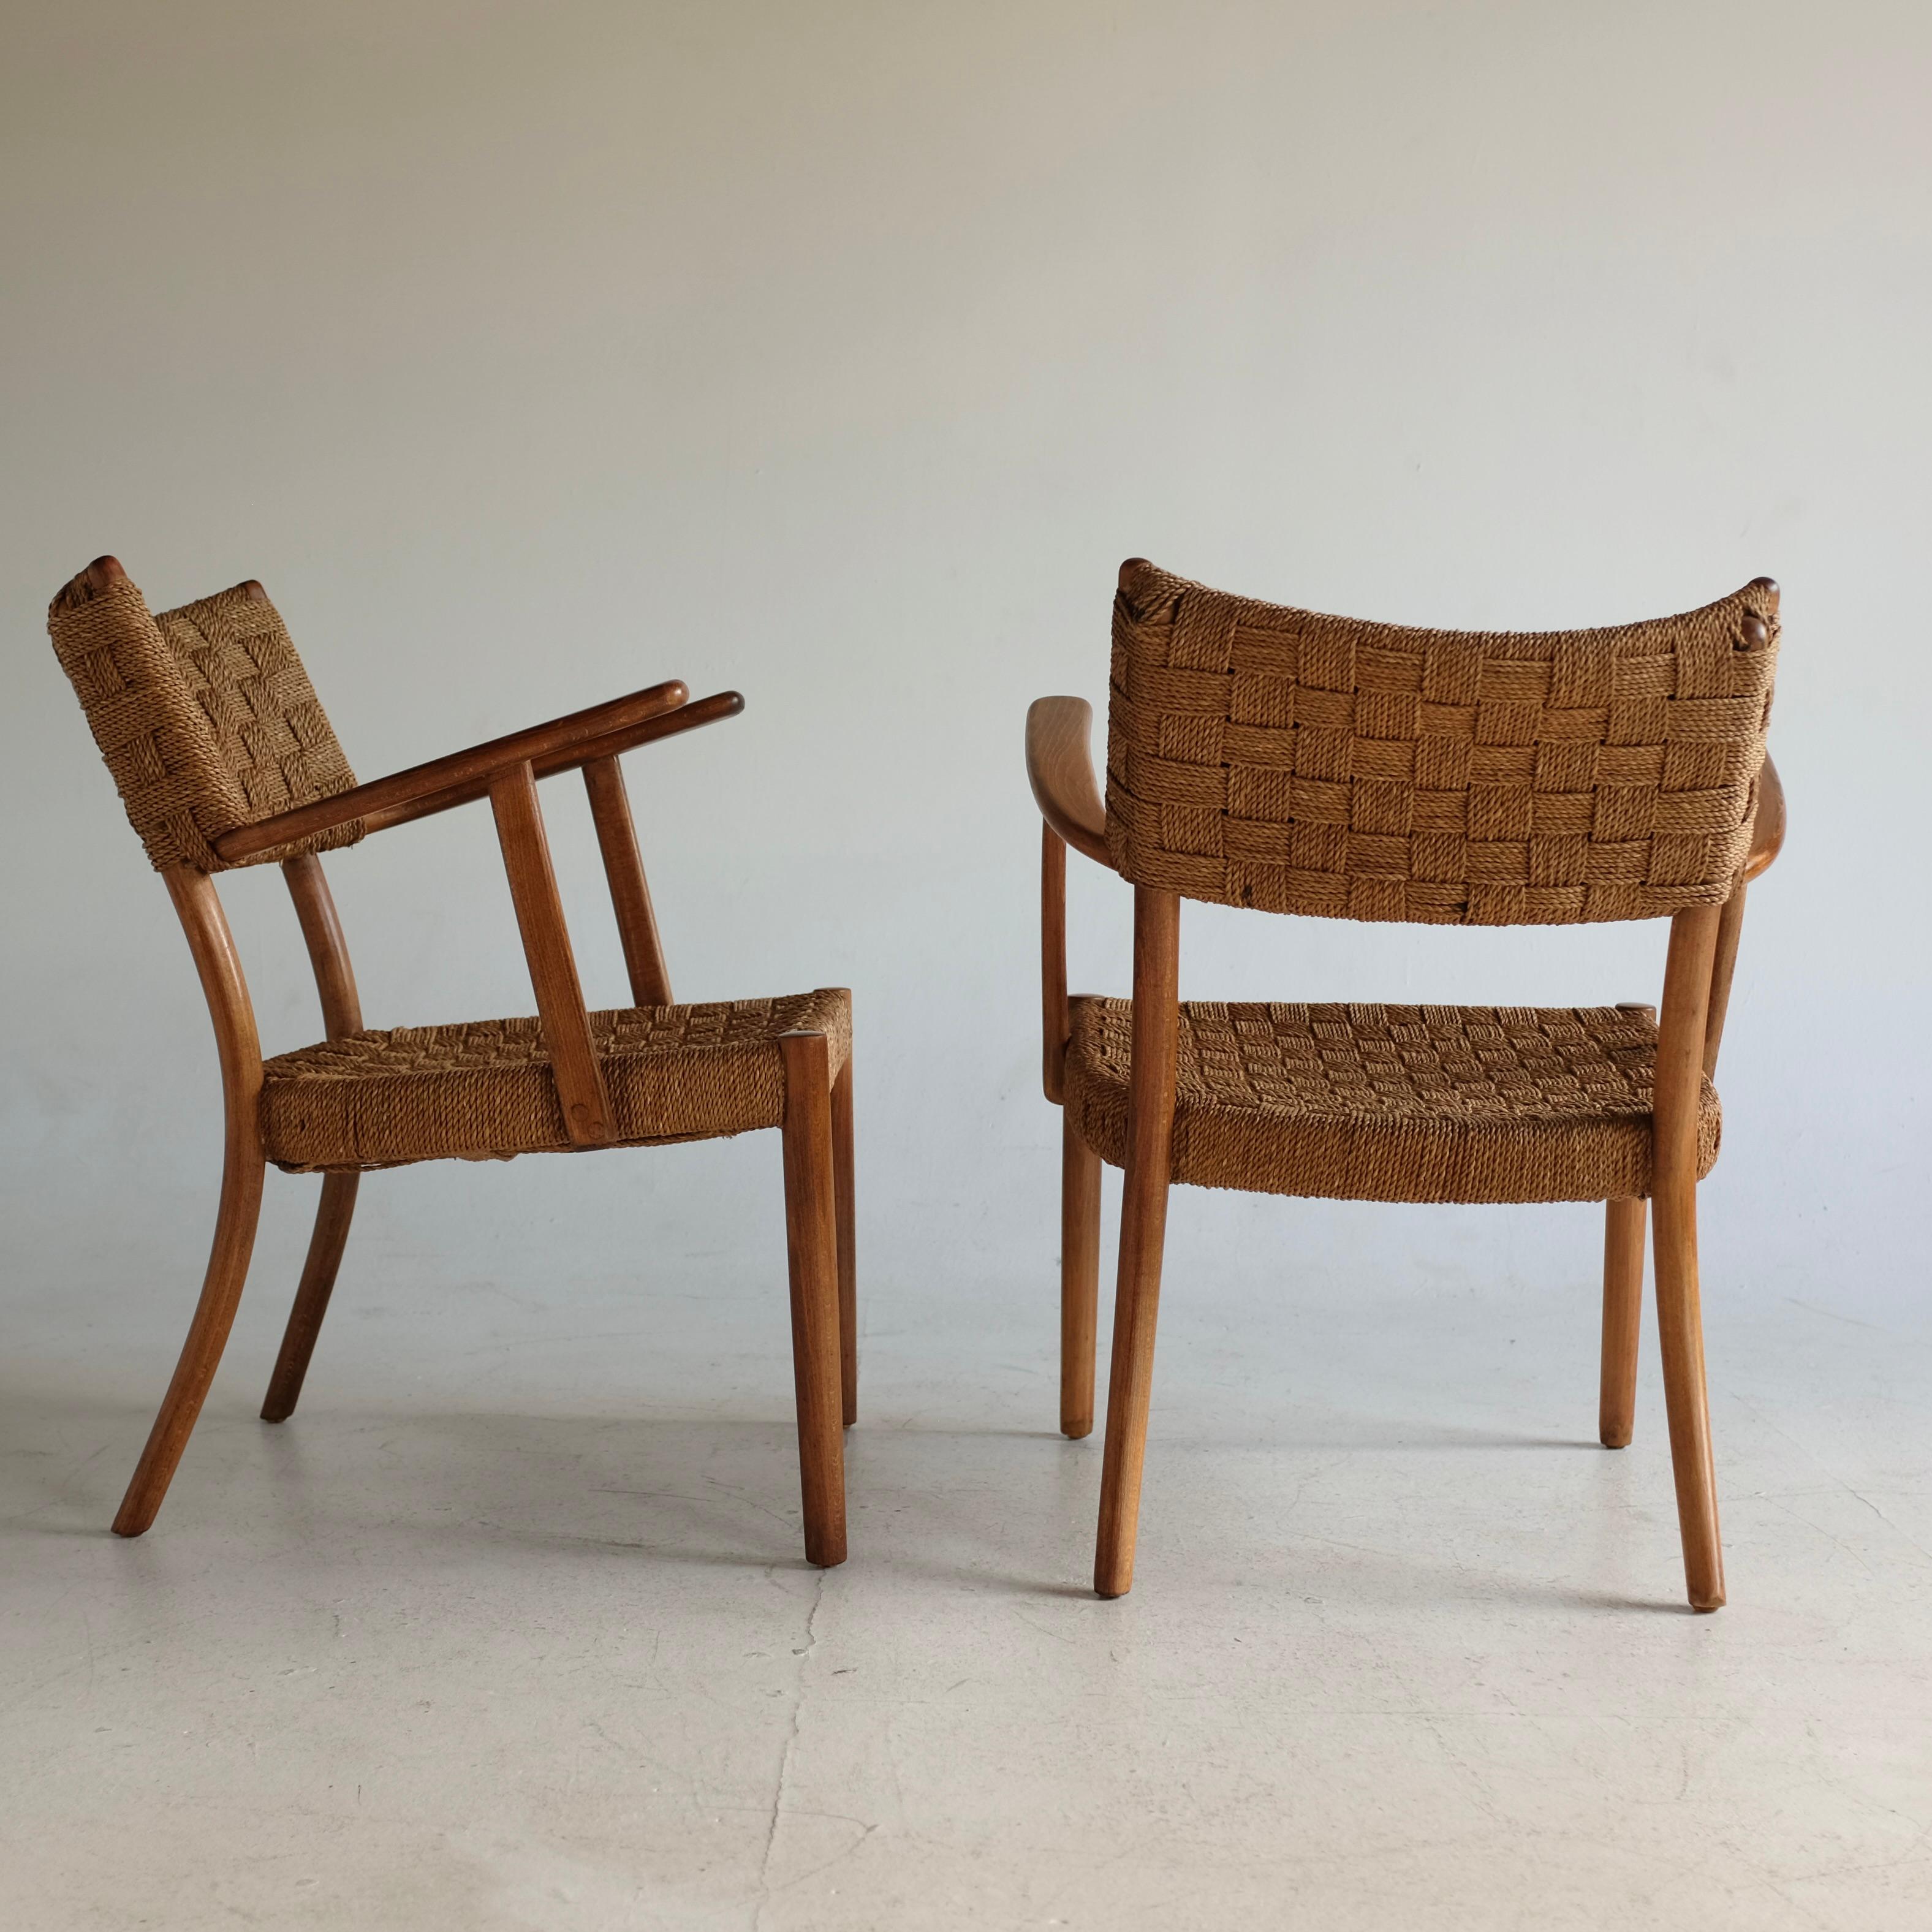 Magnifique paire de chaises Rope modèle 1570 des années 1930 par Karl Schrøder pour Fritz Hansen. Magnifique cordon de papier tissé sur le dossier et l'assise avec structure en hêtre. Le cadre a été restauré et la Corde est en très bon état avec